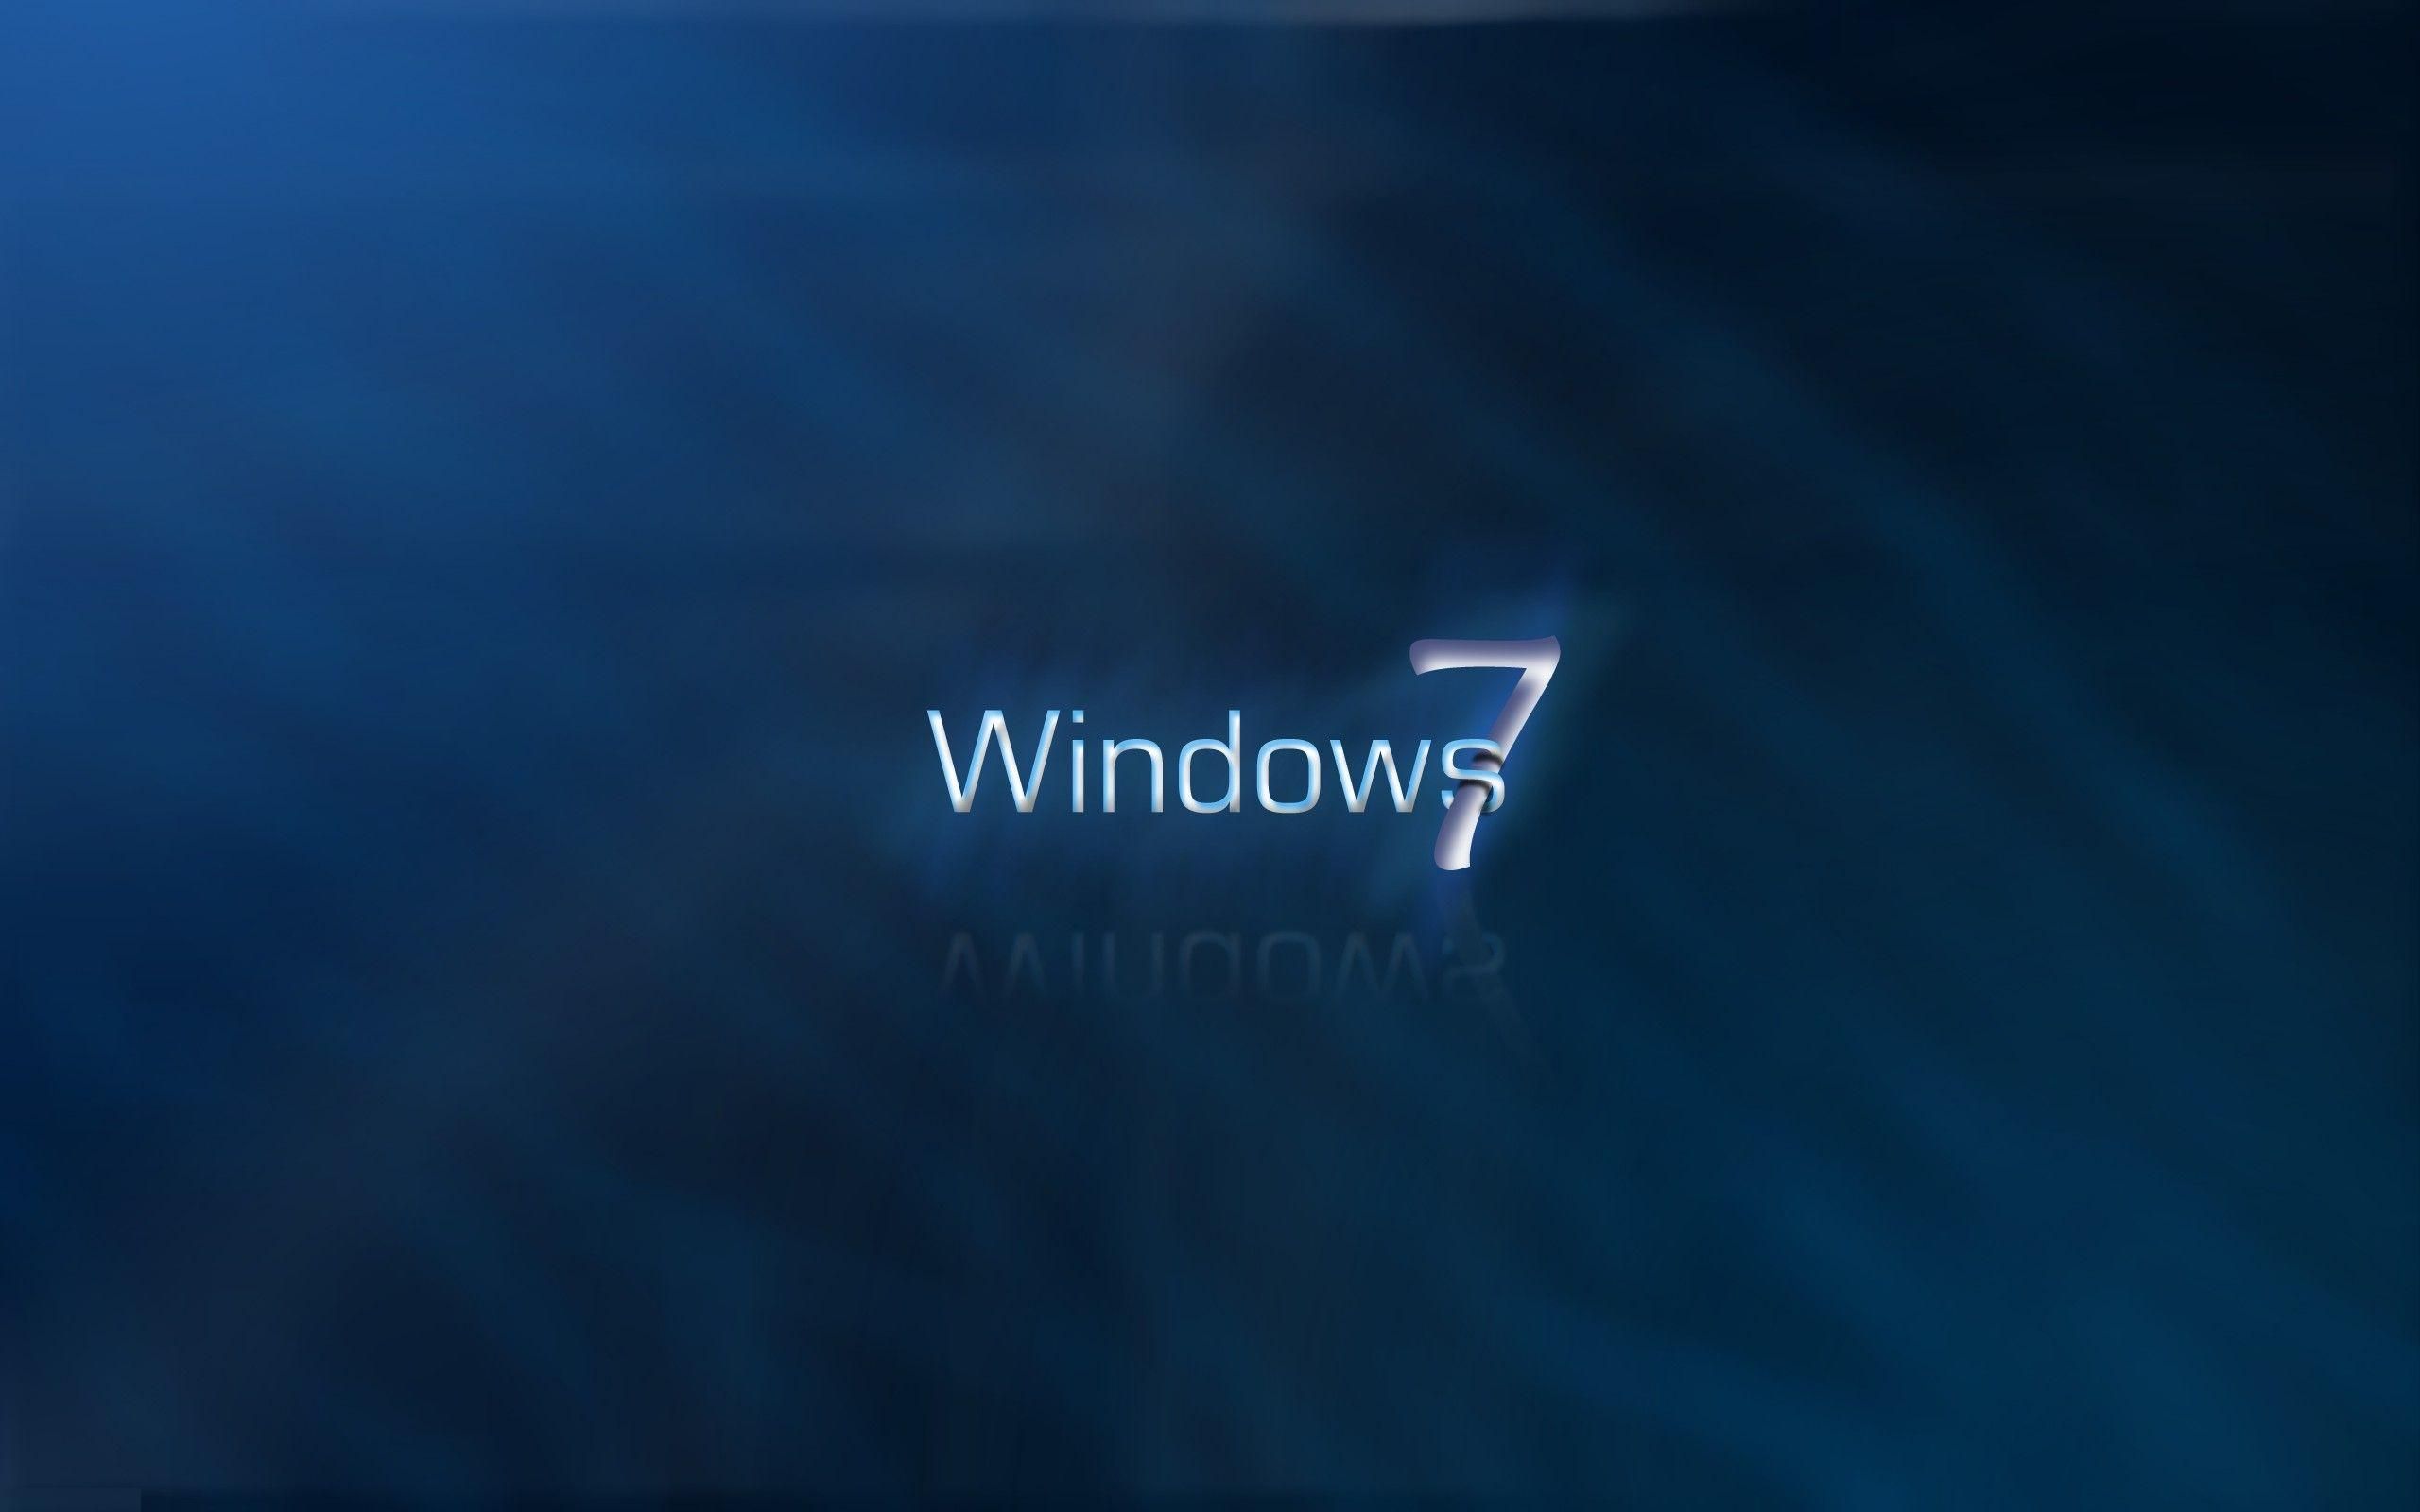 Fondos de pantalla de Windows 7 - Los mejores fondos de Windows 7 gratis - WallpaperAccess